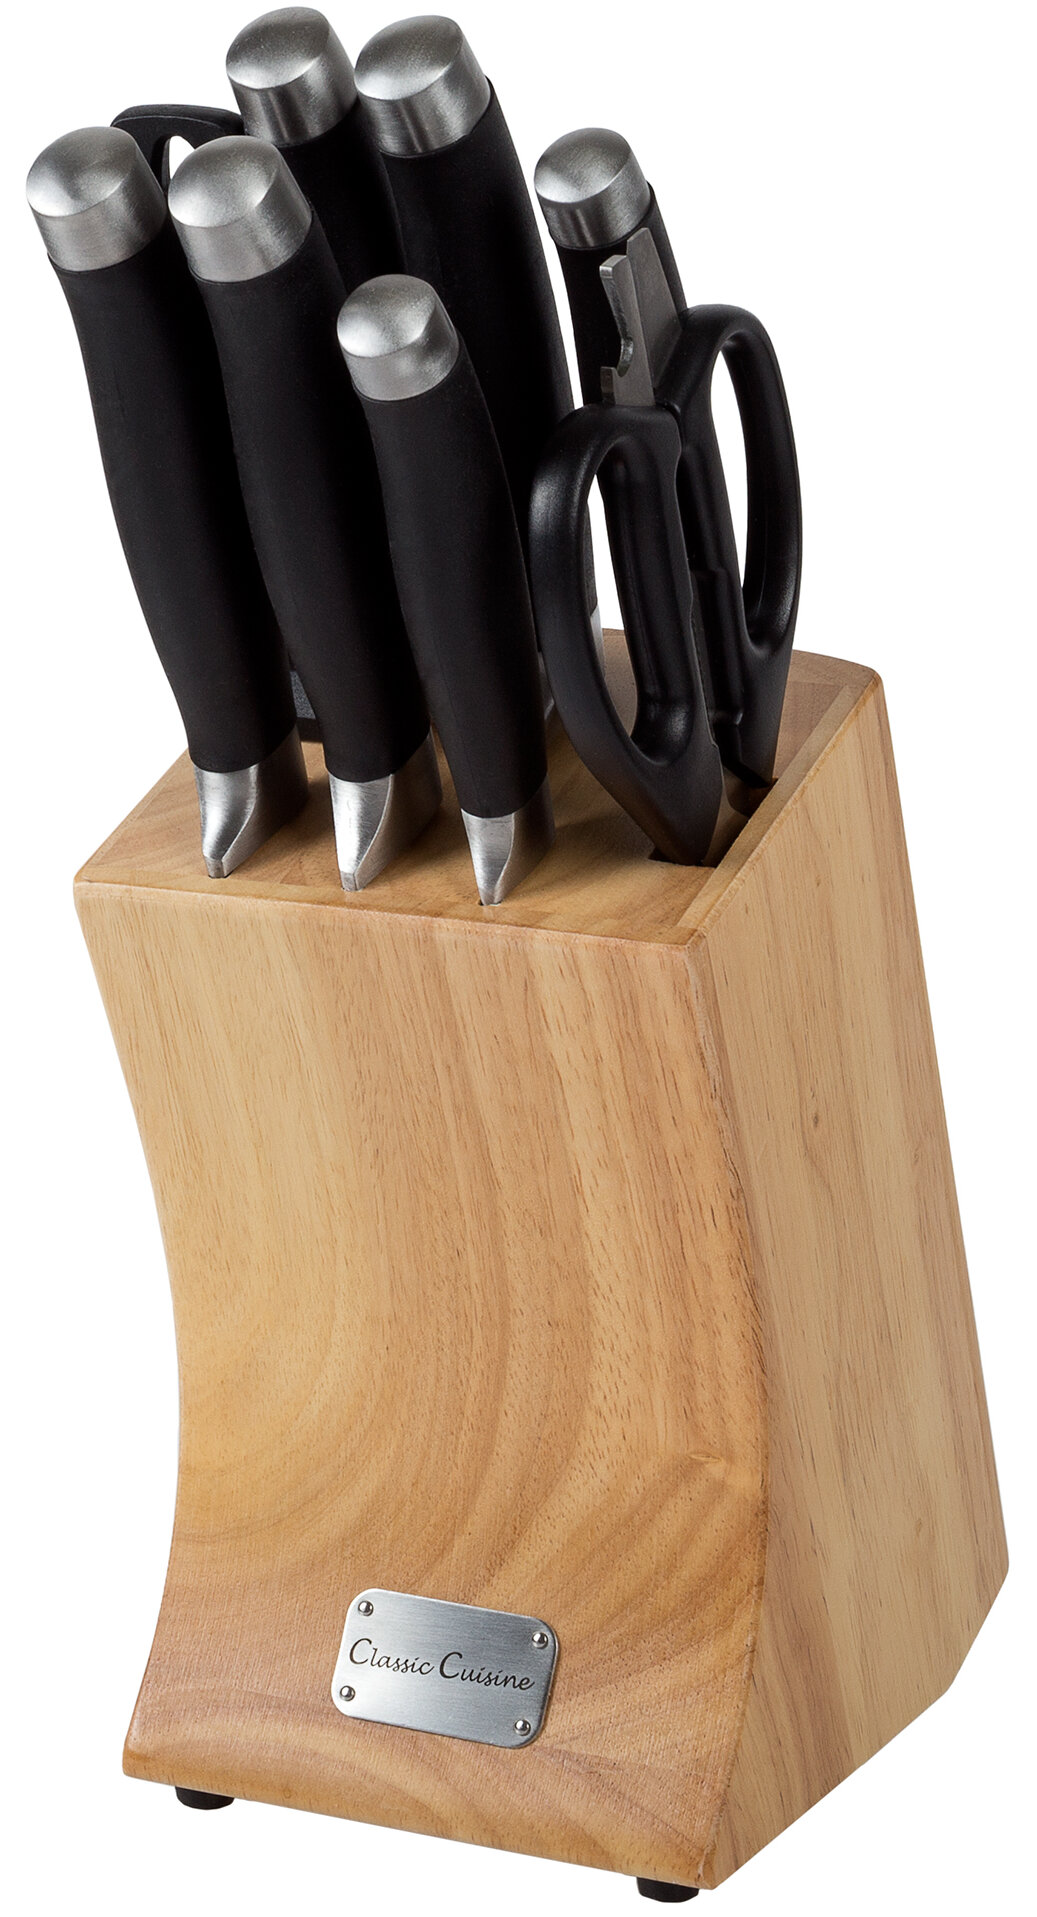 https://assets.wfcdn.com/im/67583143/compr-r85/4138/41383295/classic-cuisine-9-piece-stainless-steel-knife-block-set.jpg